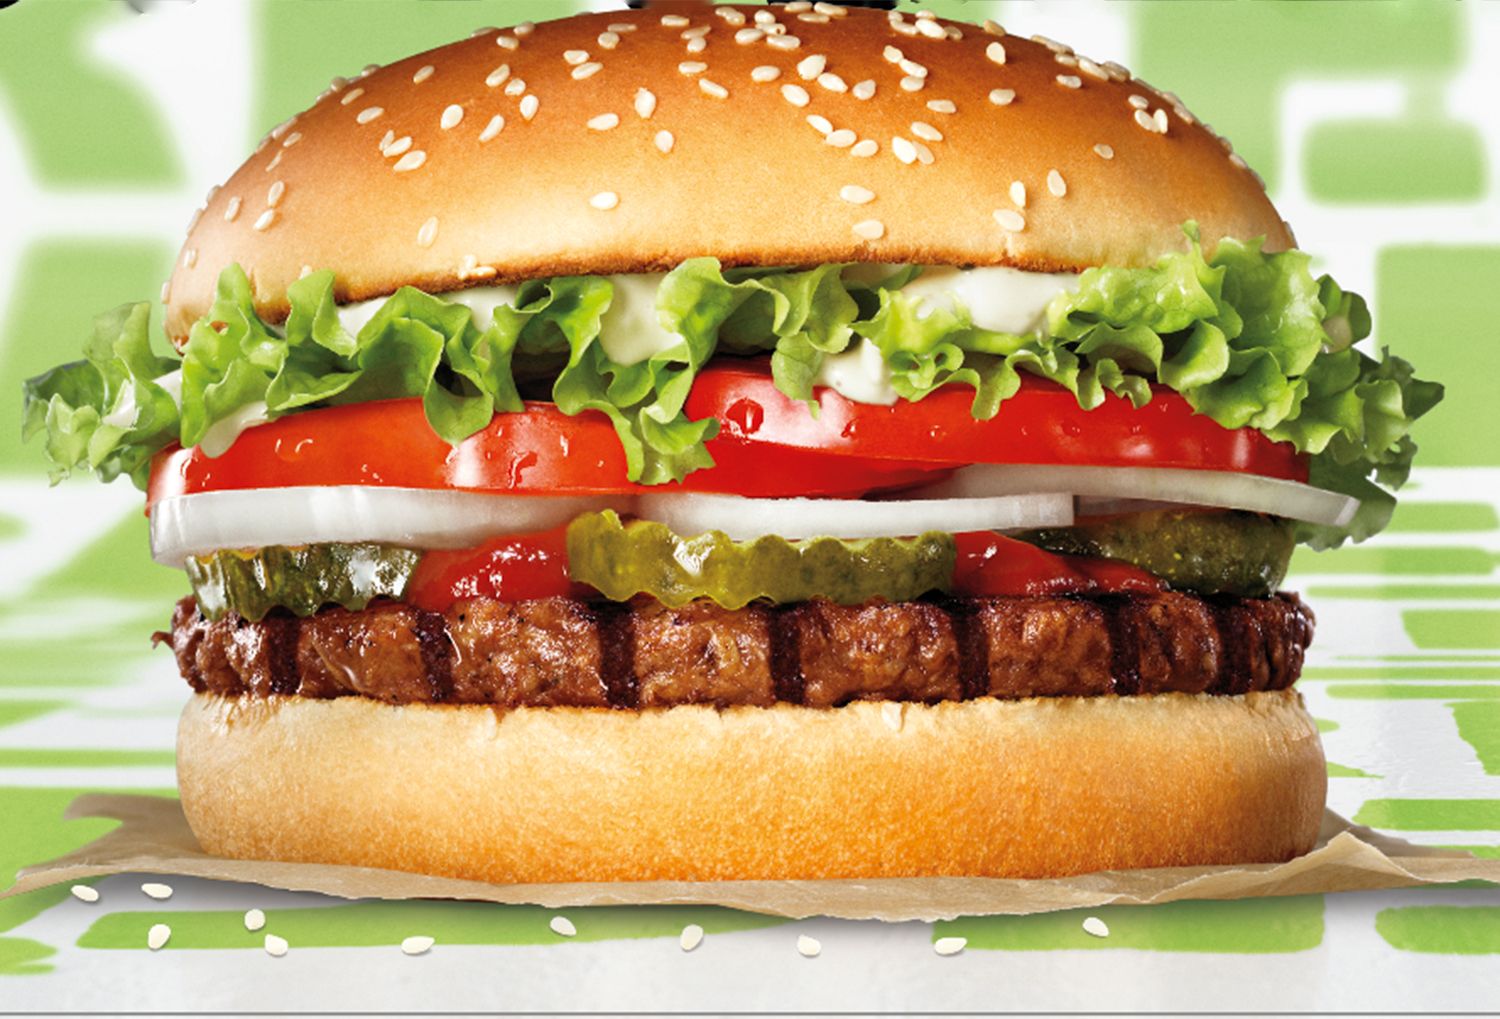 Whopper Vegetal Burger King